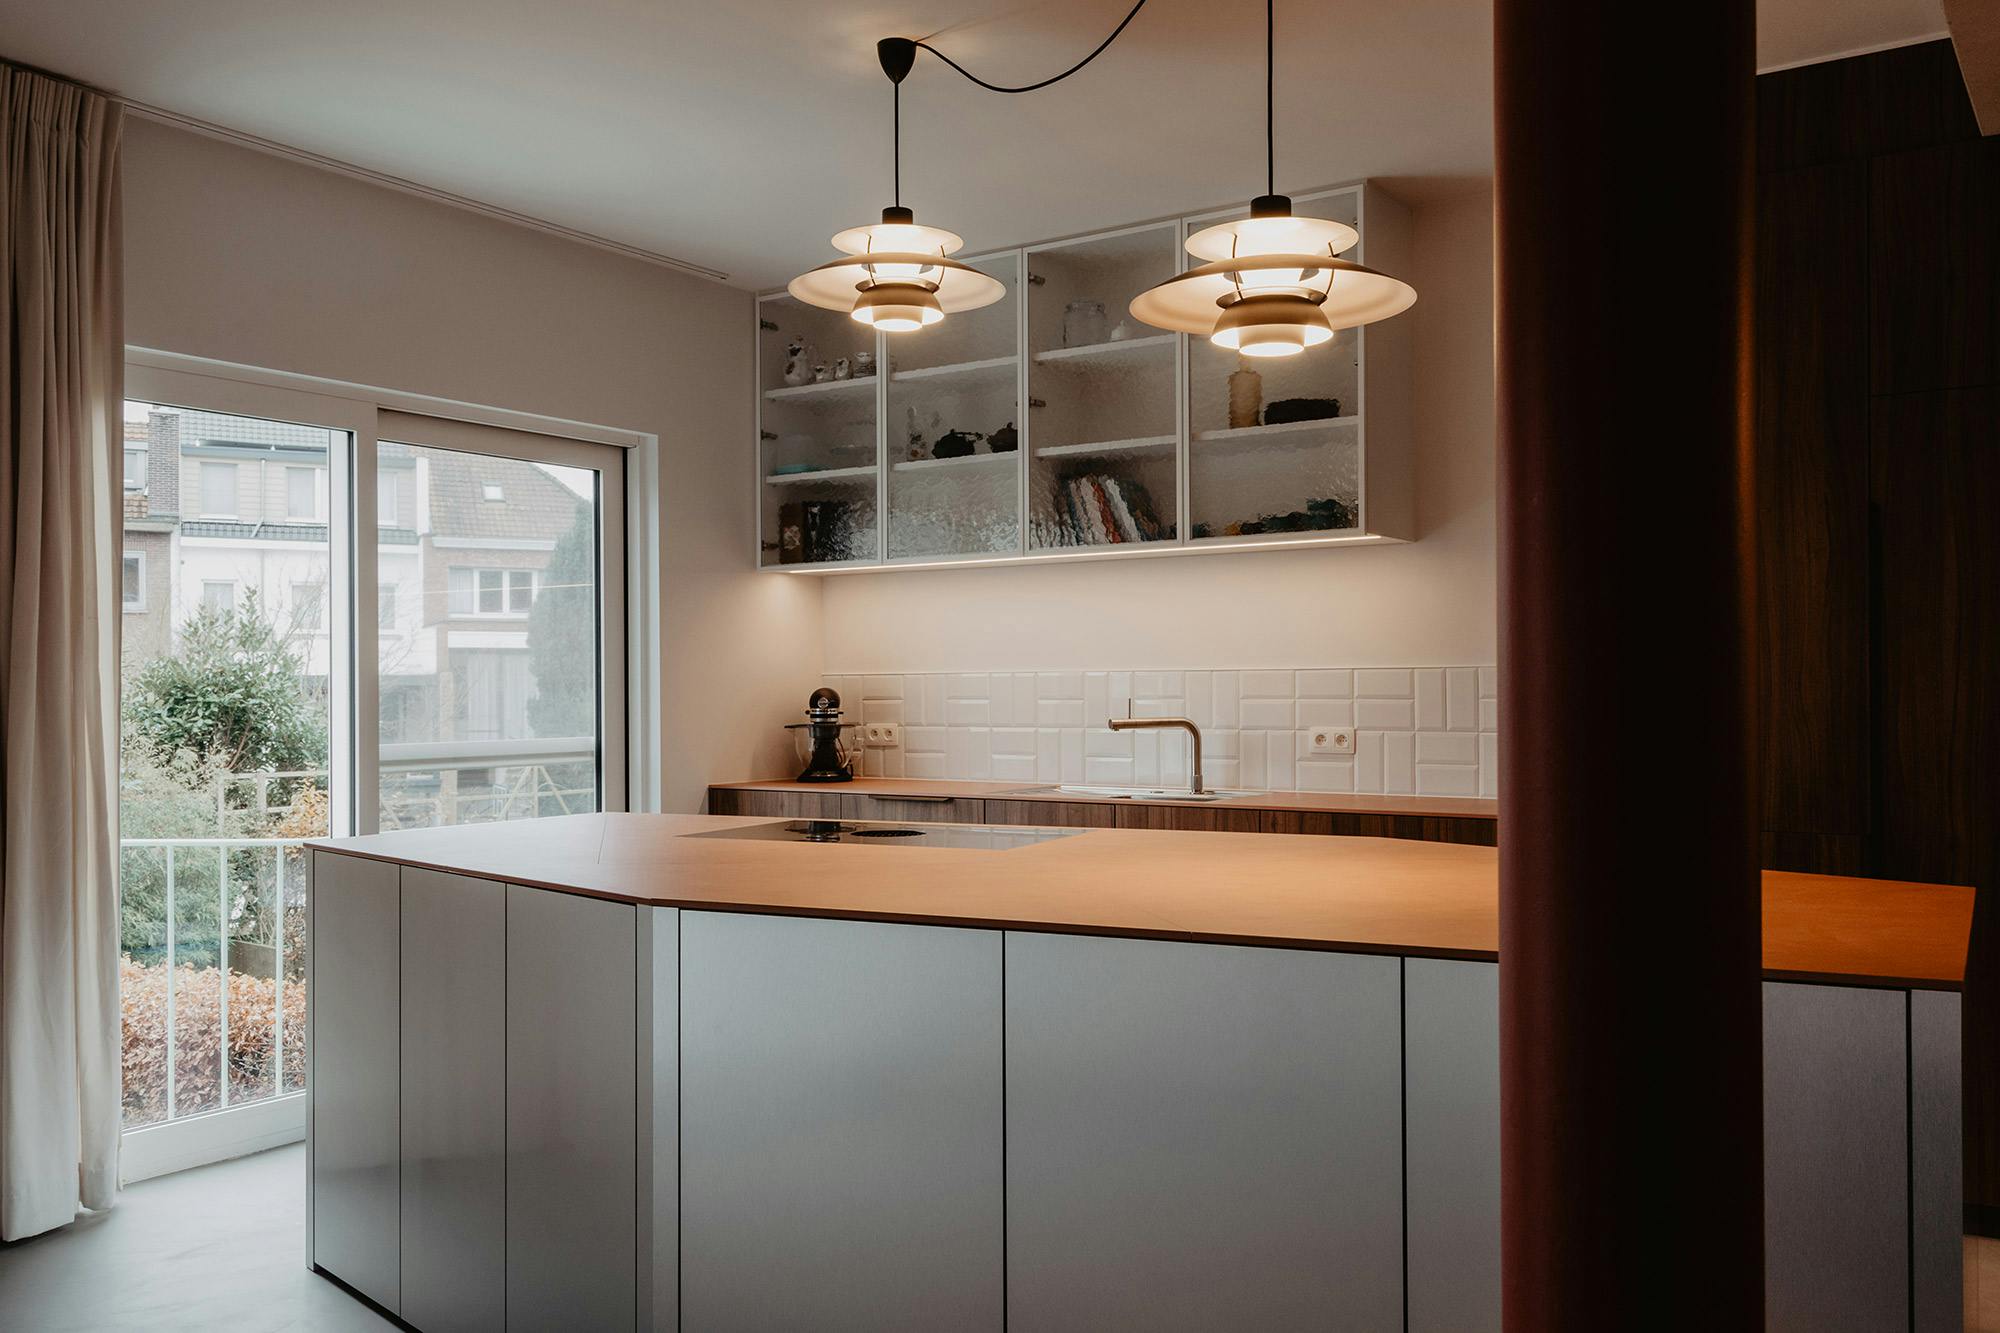 Bildnummer 44 des aktuellen Abschnitts von A stylish kitchen with Dekton for harmony, balance and durability von Cosentino Deutschland